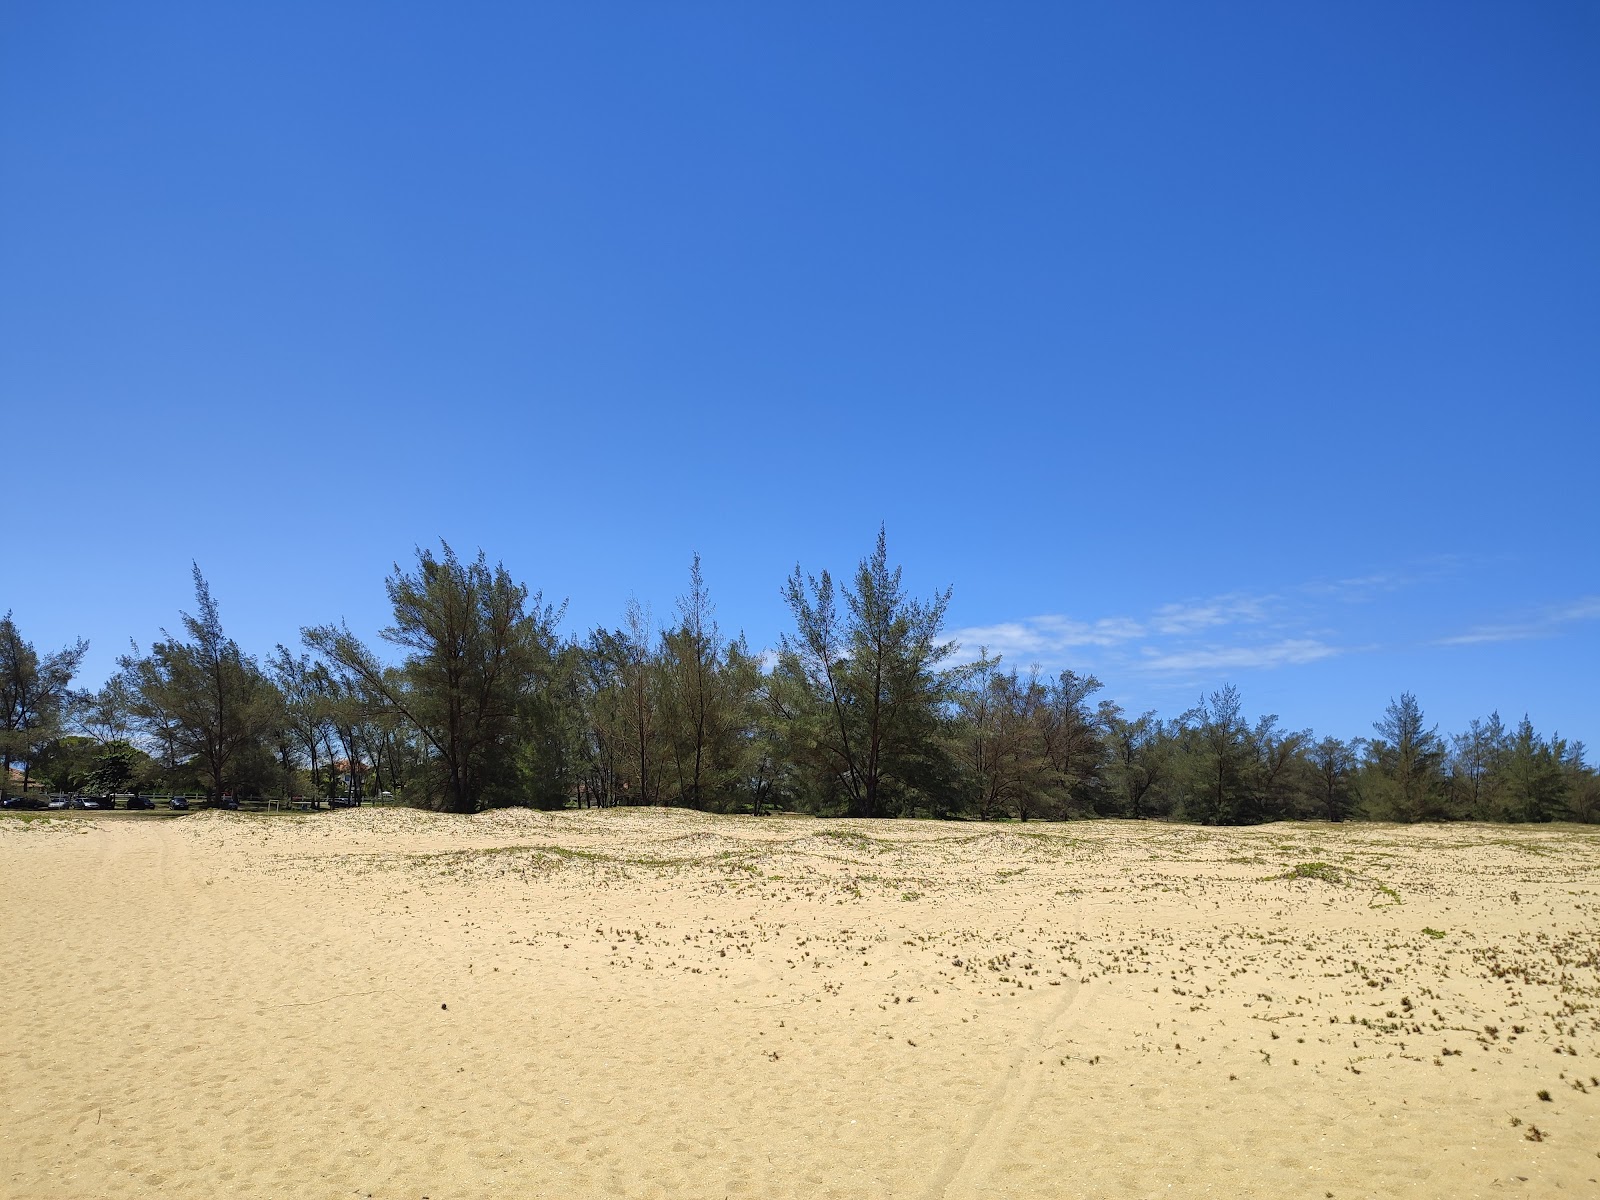 谢谢海滩的照片 带有明亮的沙子表面